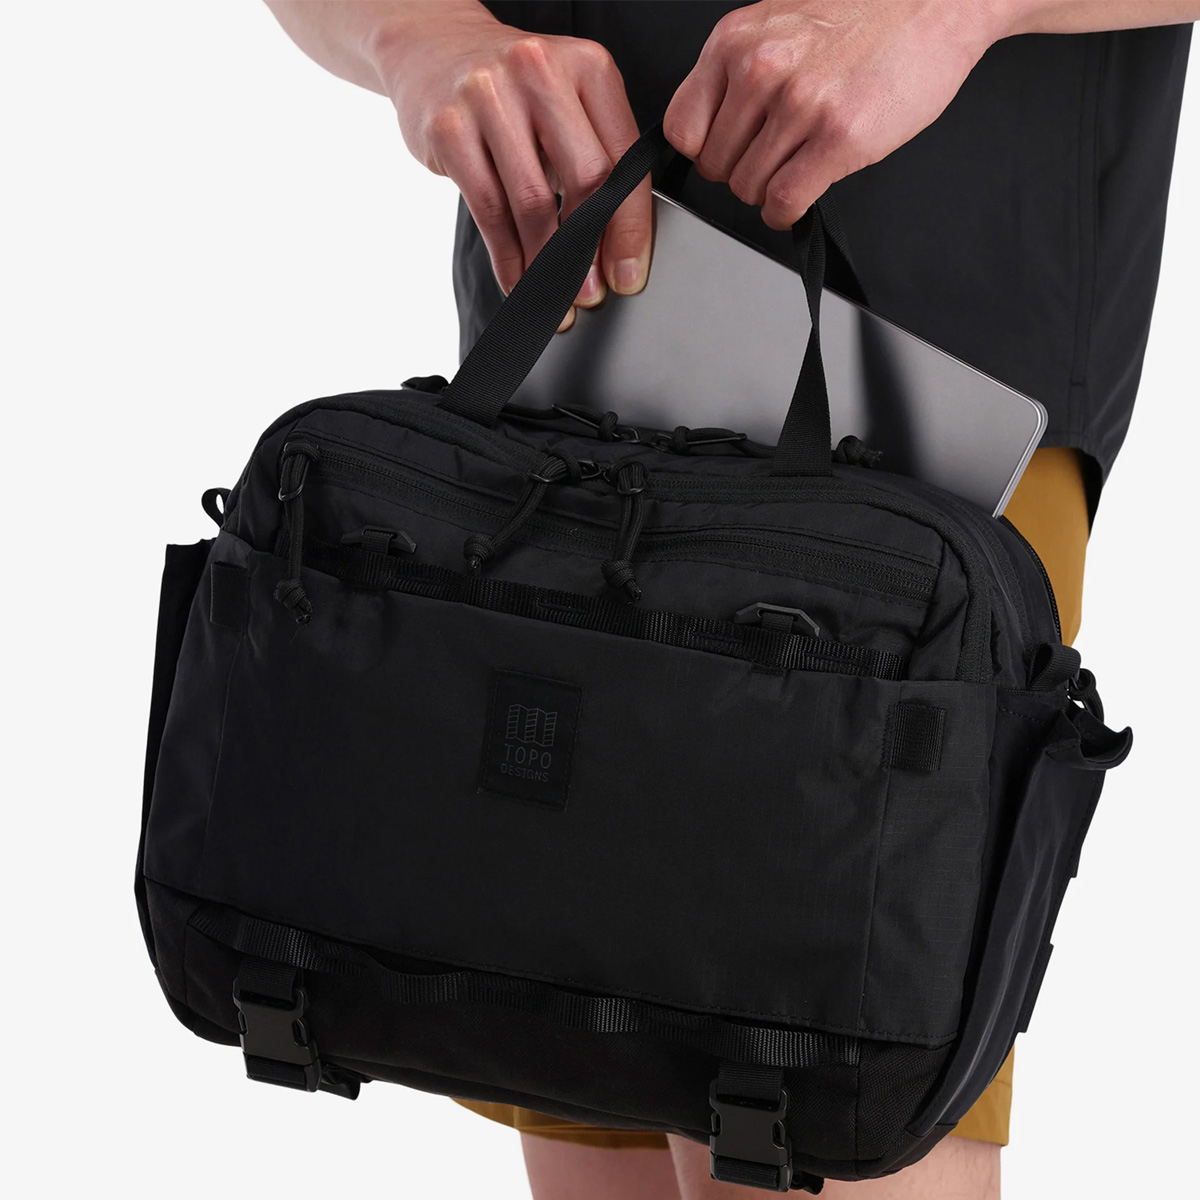 Topo Designs Mountain Cross Bag, met een interne laptop sleeve (13 inch)